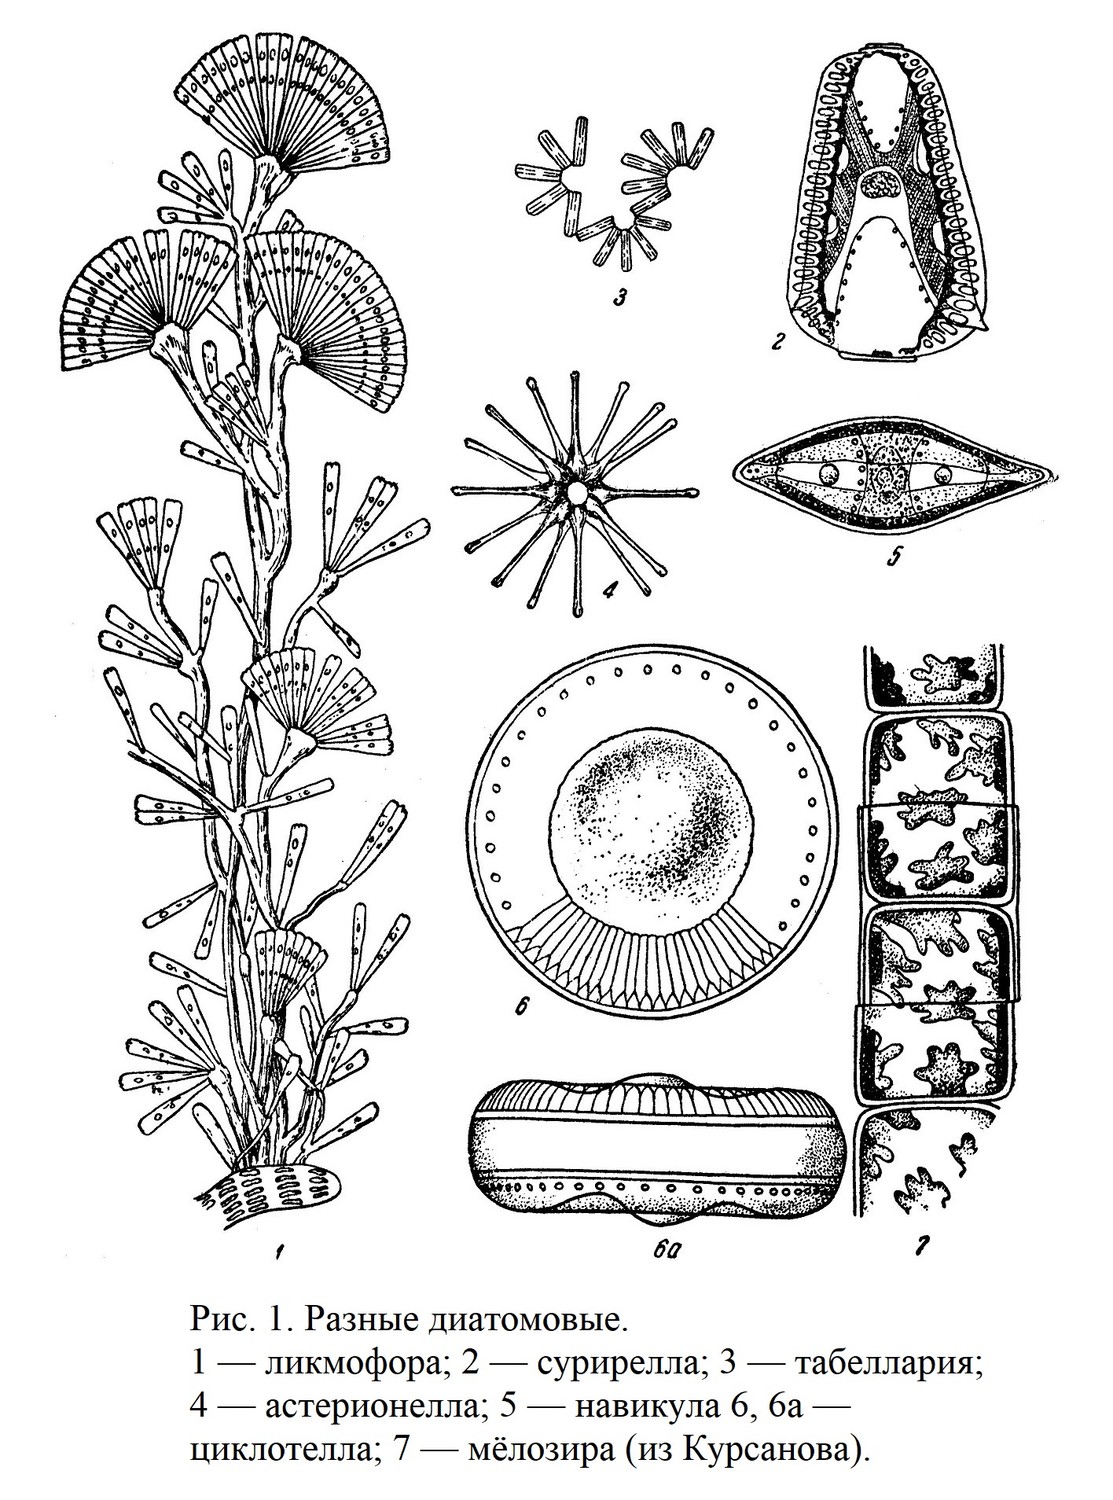 Класс диатомовые водоросли — Diatomeae